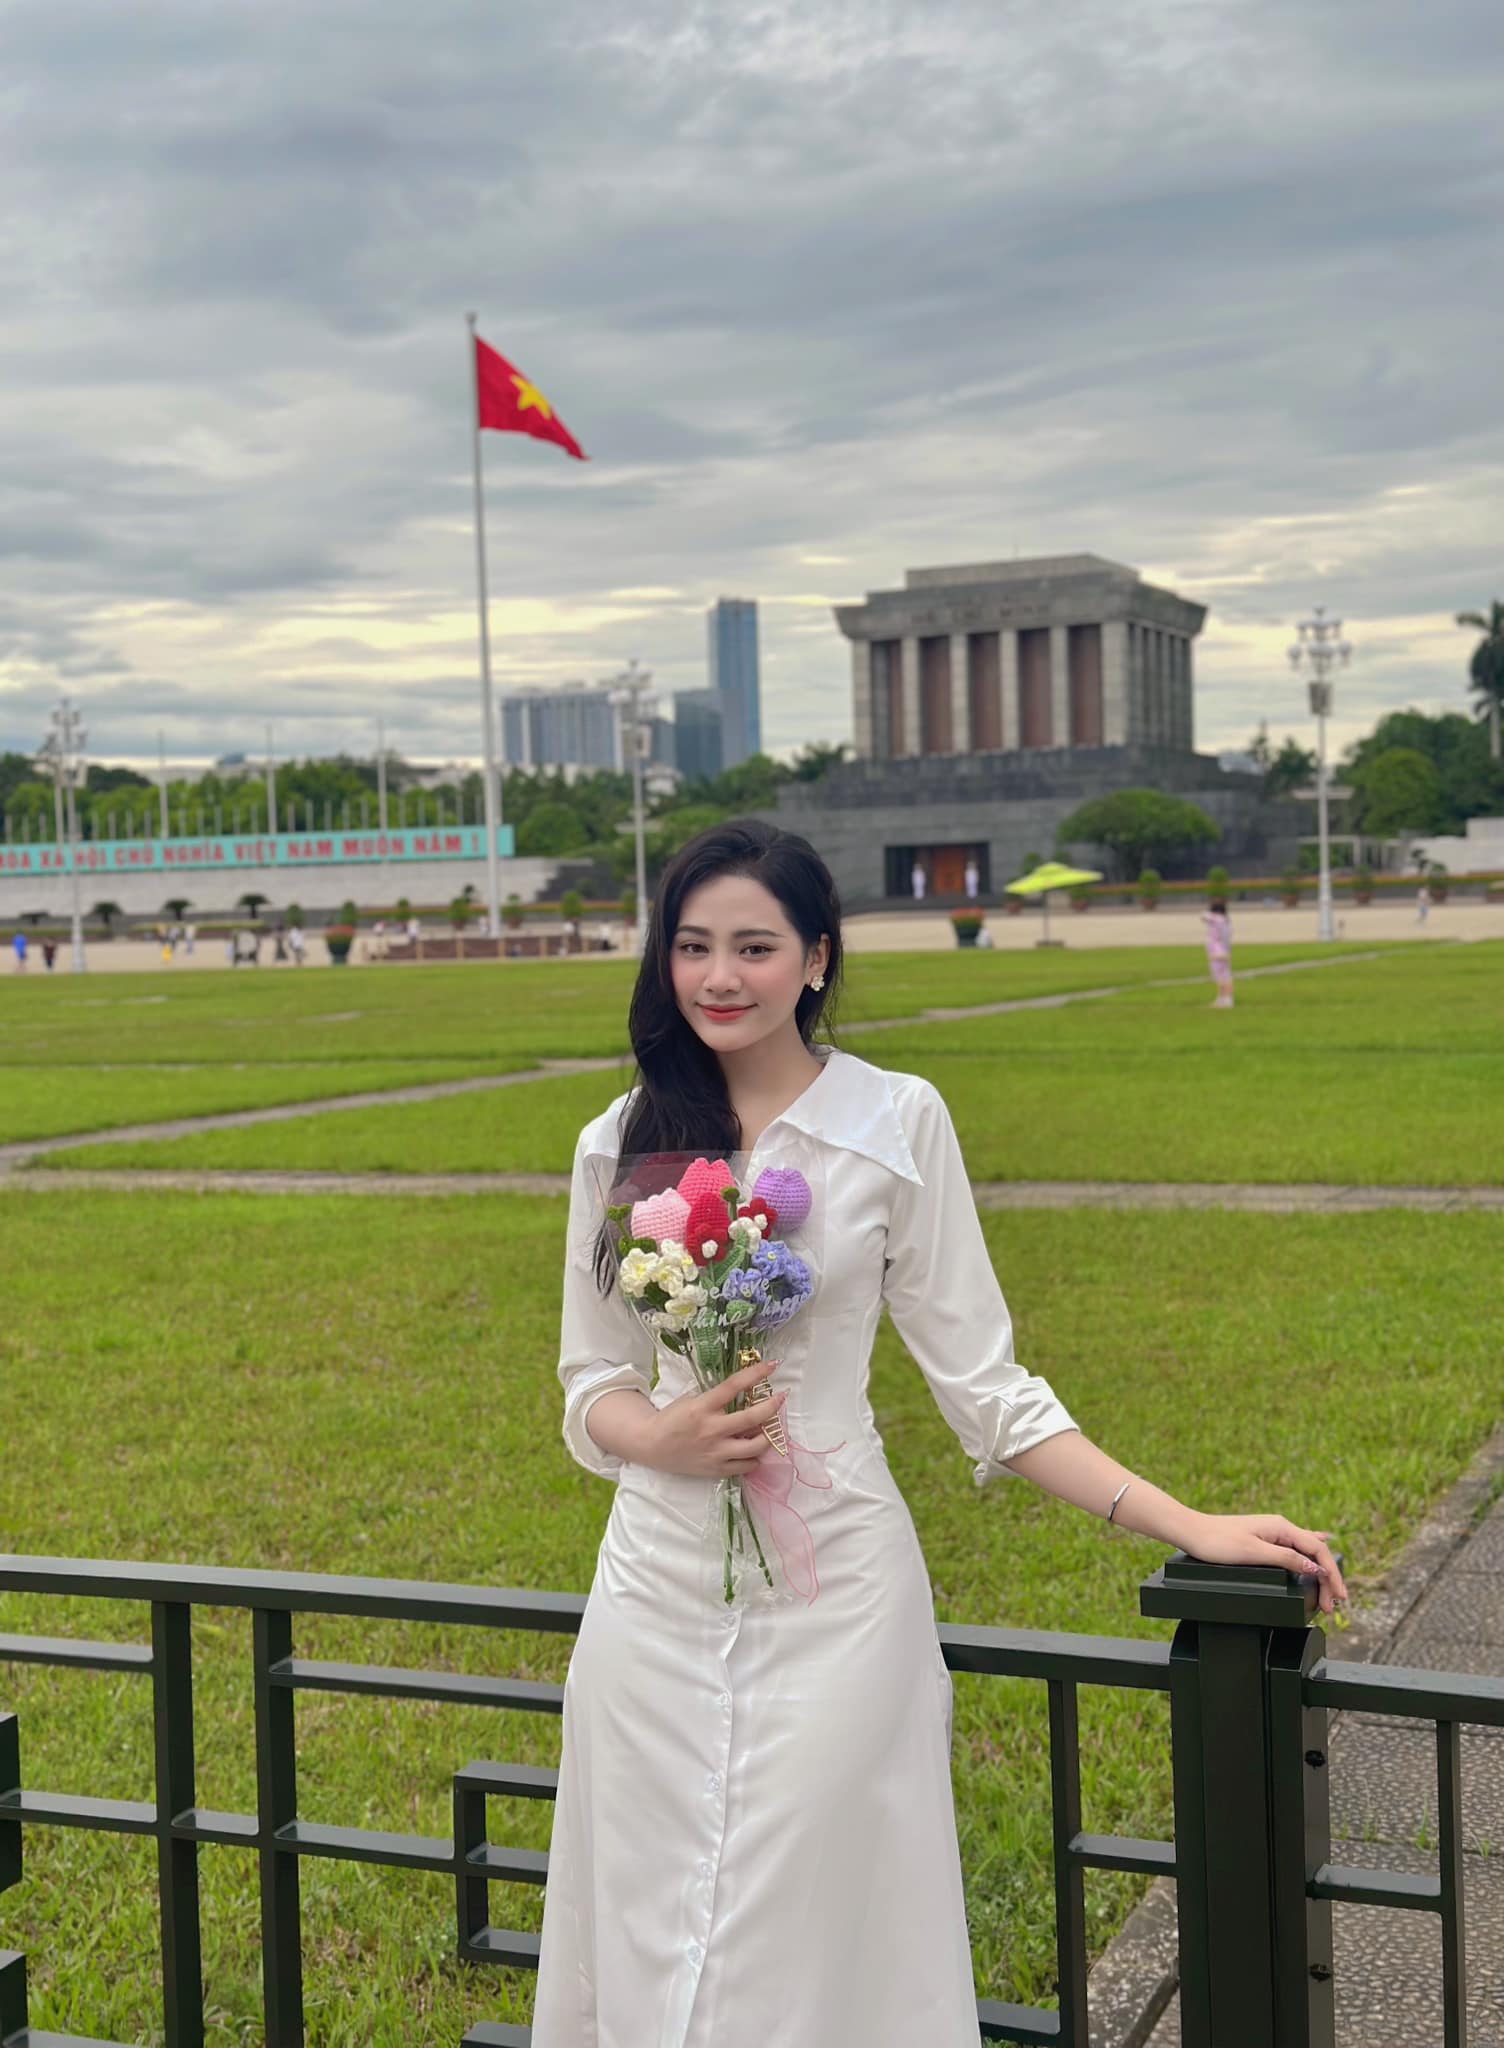 Hoa hậu đặc biệt nhất Việt Nam: Trả lại vương miện ngay khi đăng quang, nhan sắc và cuộc sống hiện ra sao? - Ảnh 4.